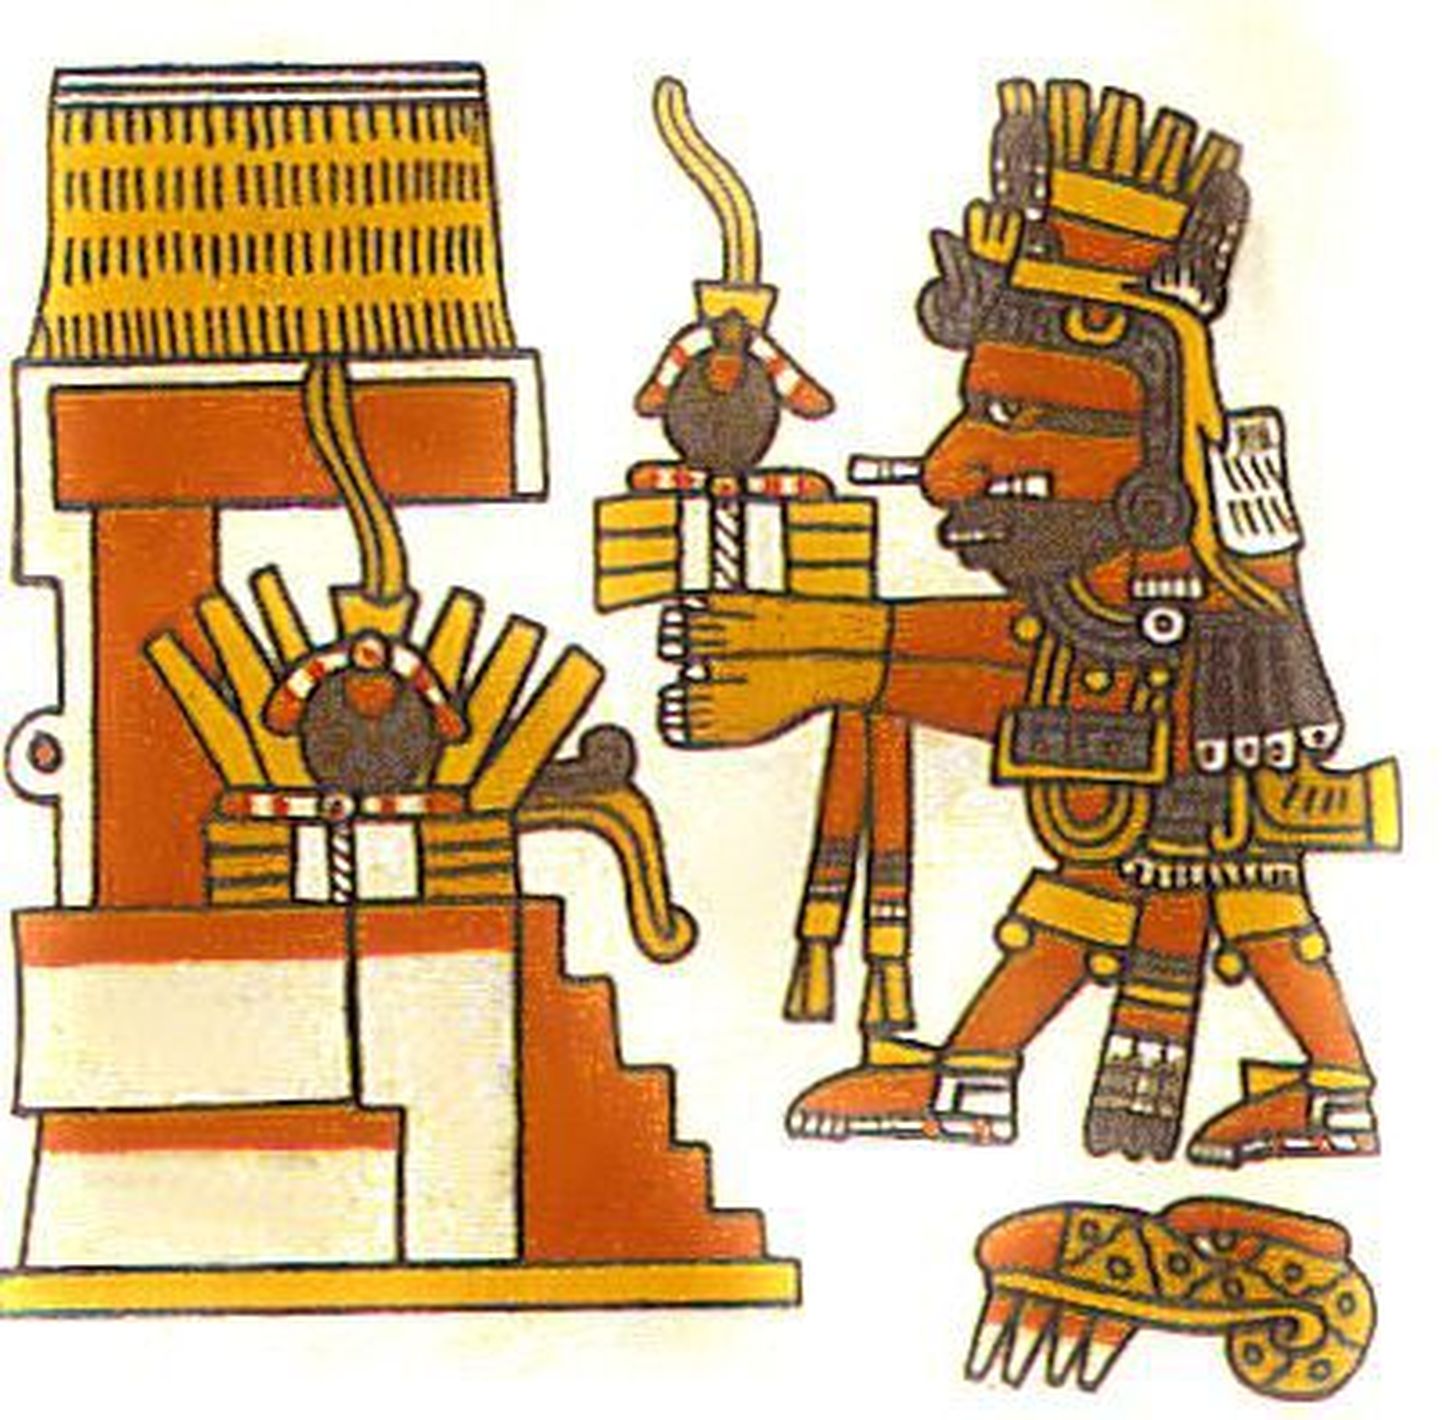 Religioosse sisuga joonis, millel on kujutatud asteekide jumalat Xiuhtecuhtlit kummipalle templis ohverdamas